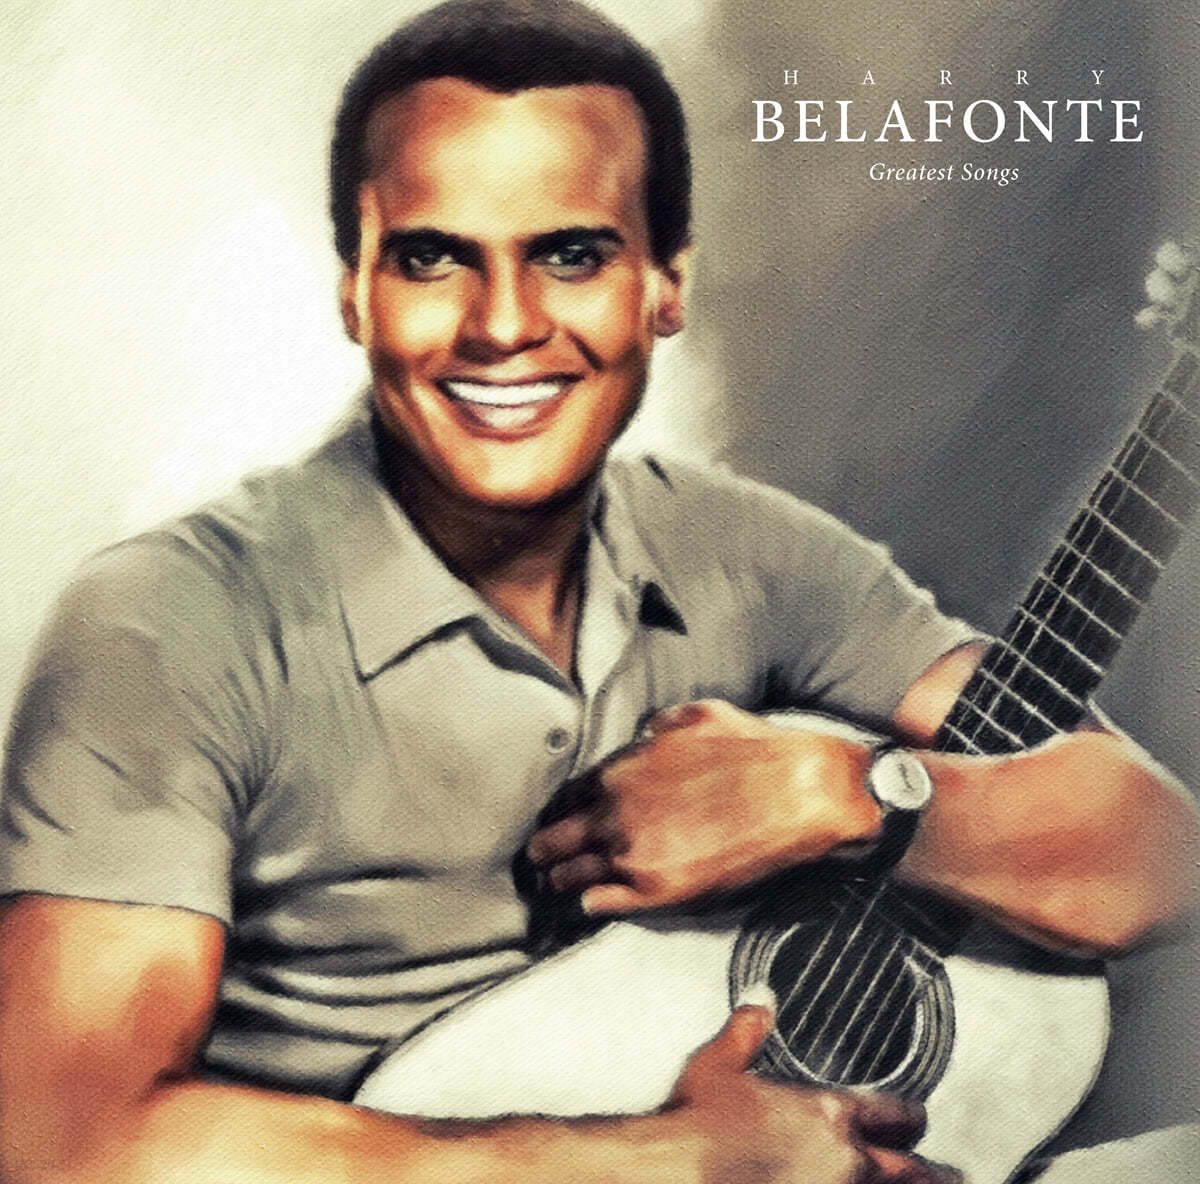 해리 벨라폰테 히트곡 모음집 (Harry Belafonte Greatest Songs) [오렌지 마블 컬러 LP]